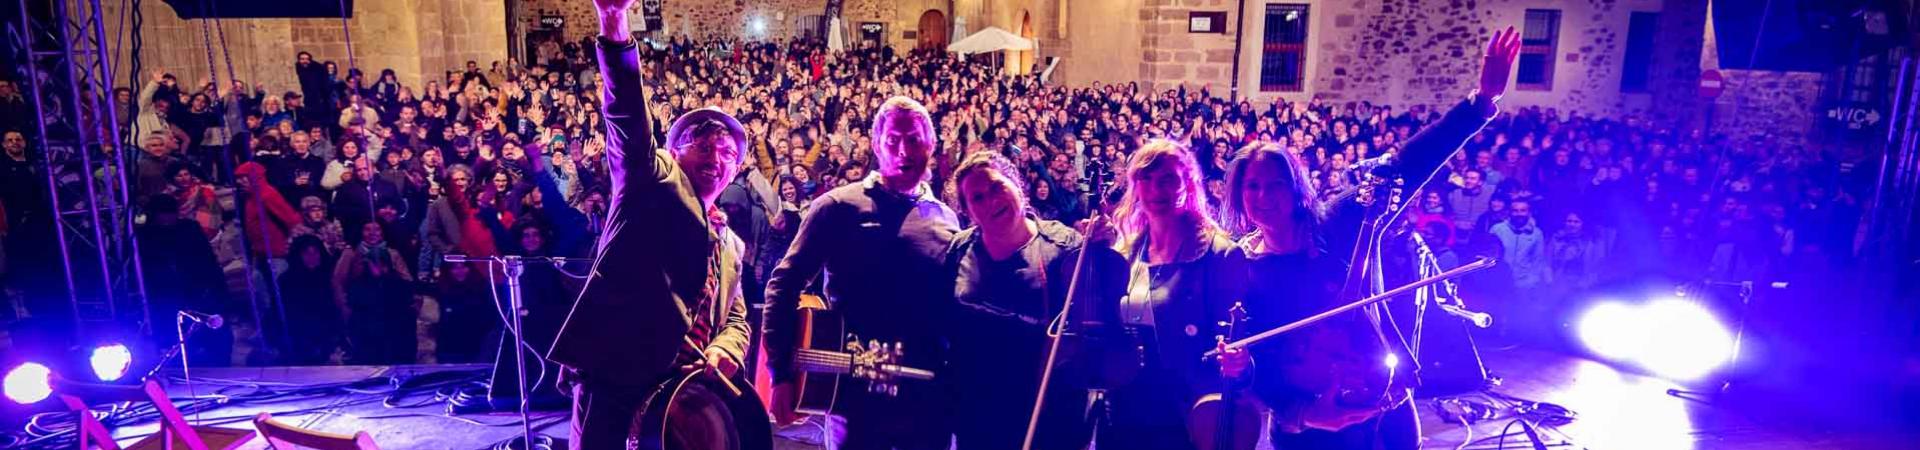 2018-caceres-irish-fleadh-concierto-selly-valley-2.jpg